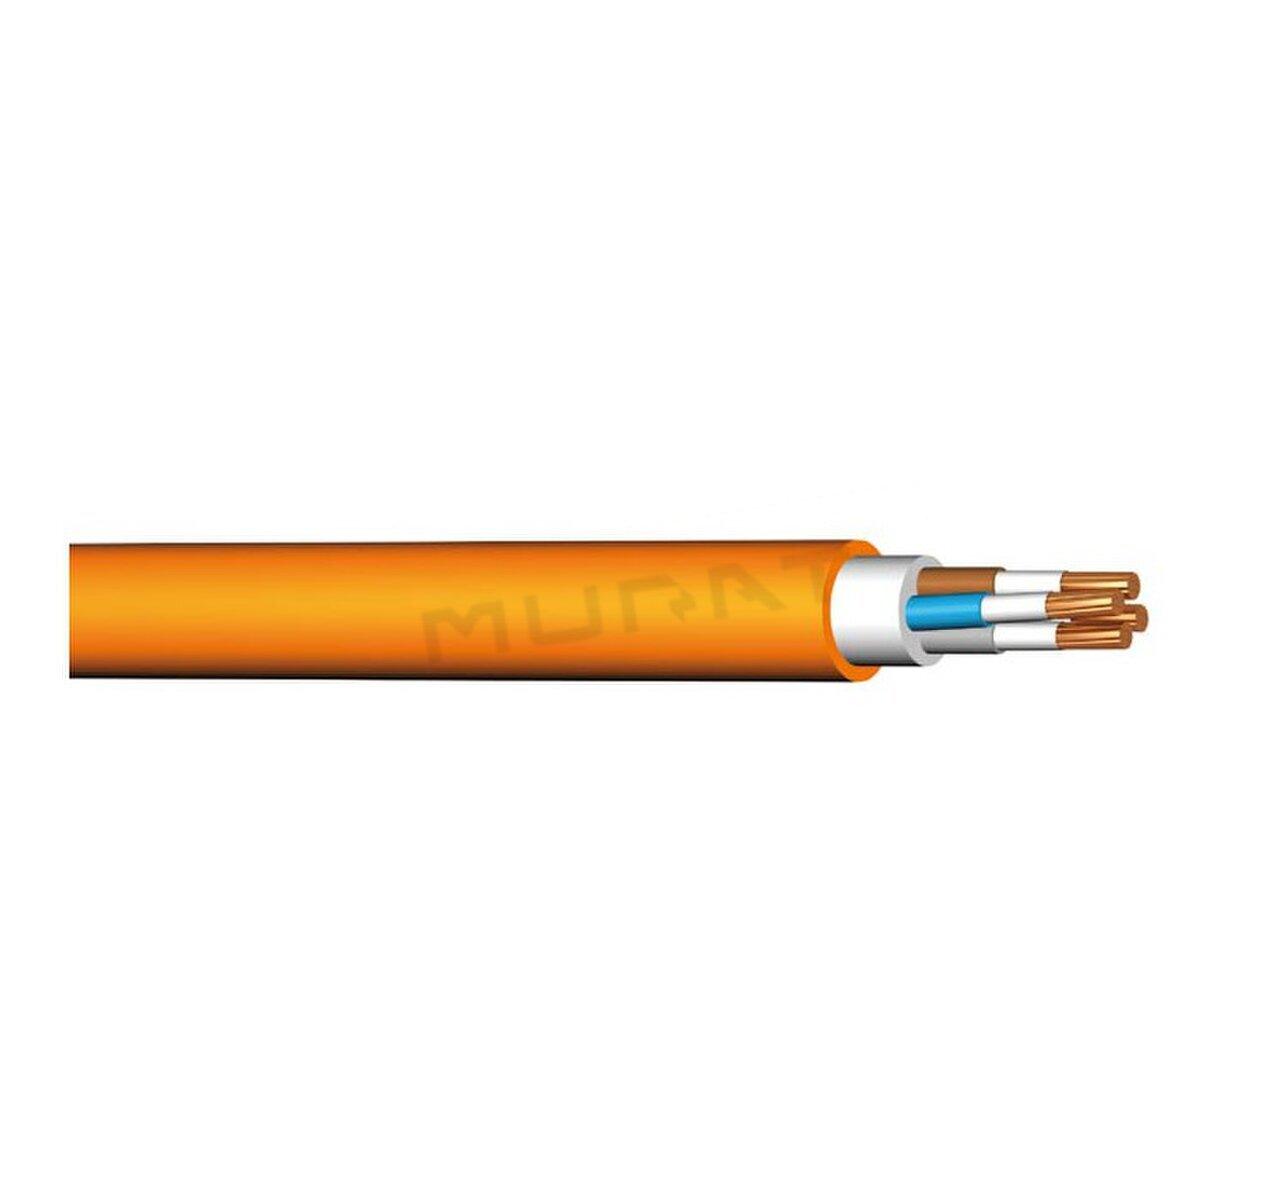 Kábel NHXH-O 2x1,5 mm2 FE180/E90 N silový